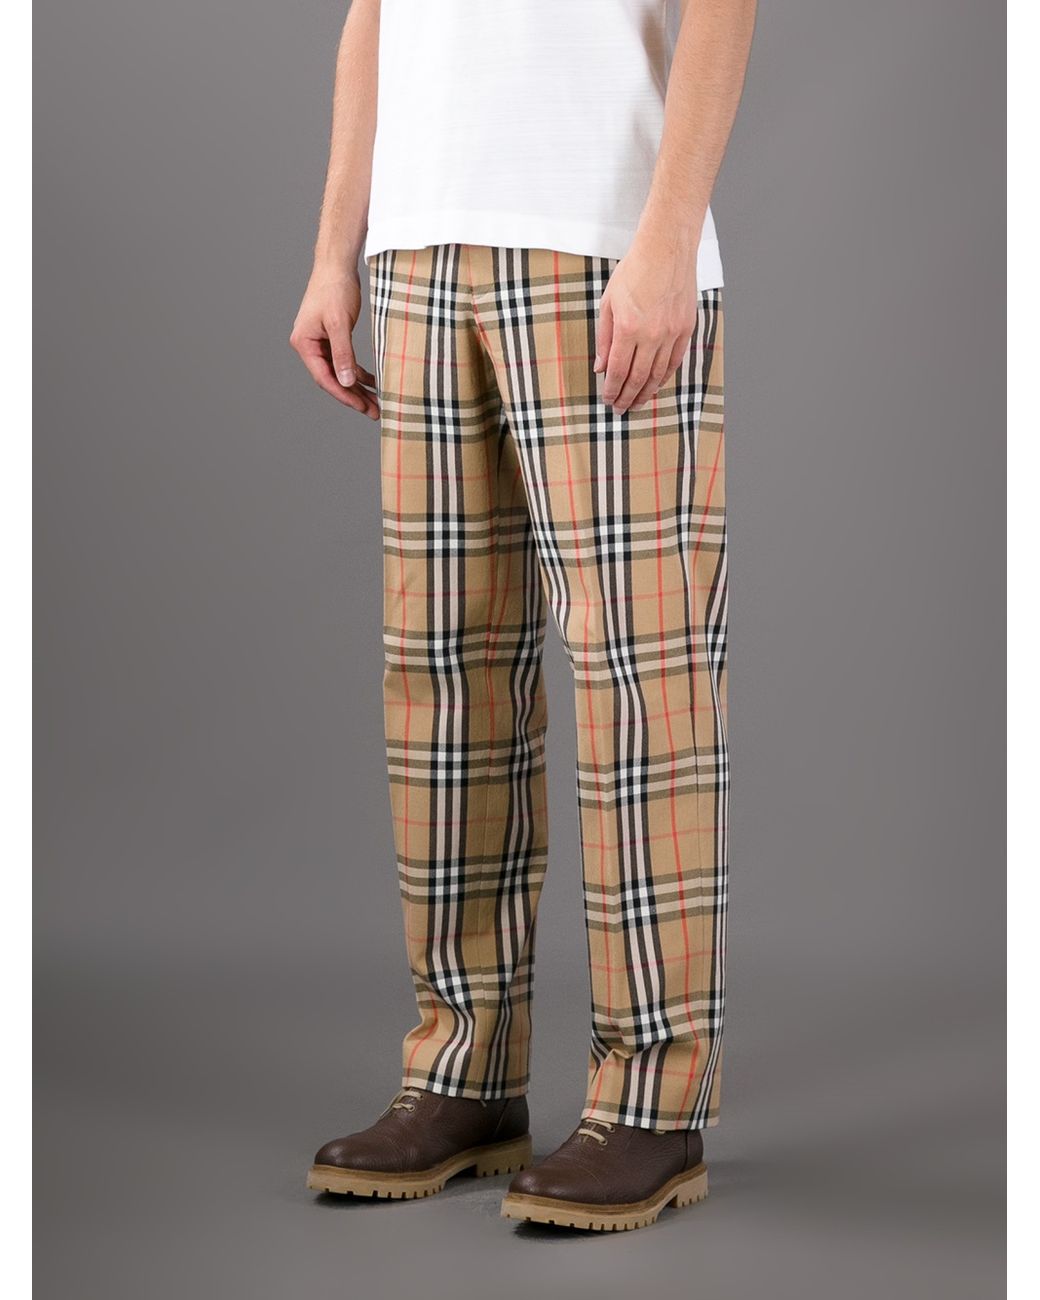 11 Best Burberry Pants patterns ideas  burberry pants pants pattern mens  trousers